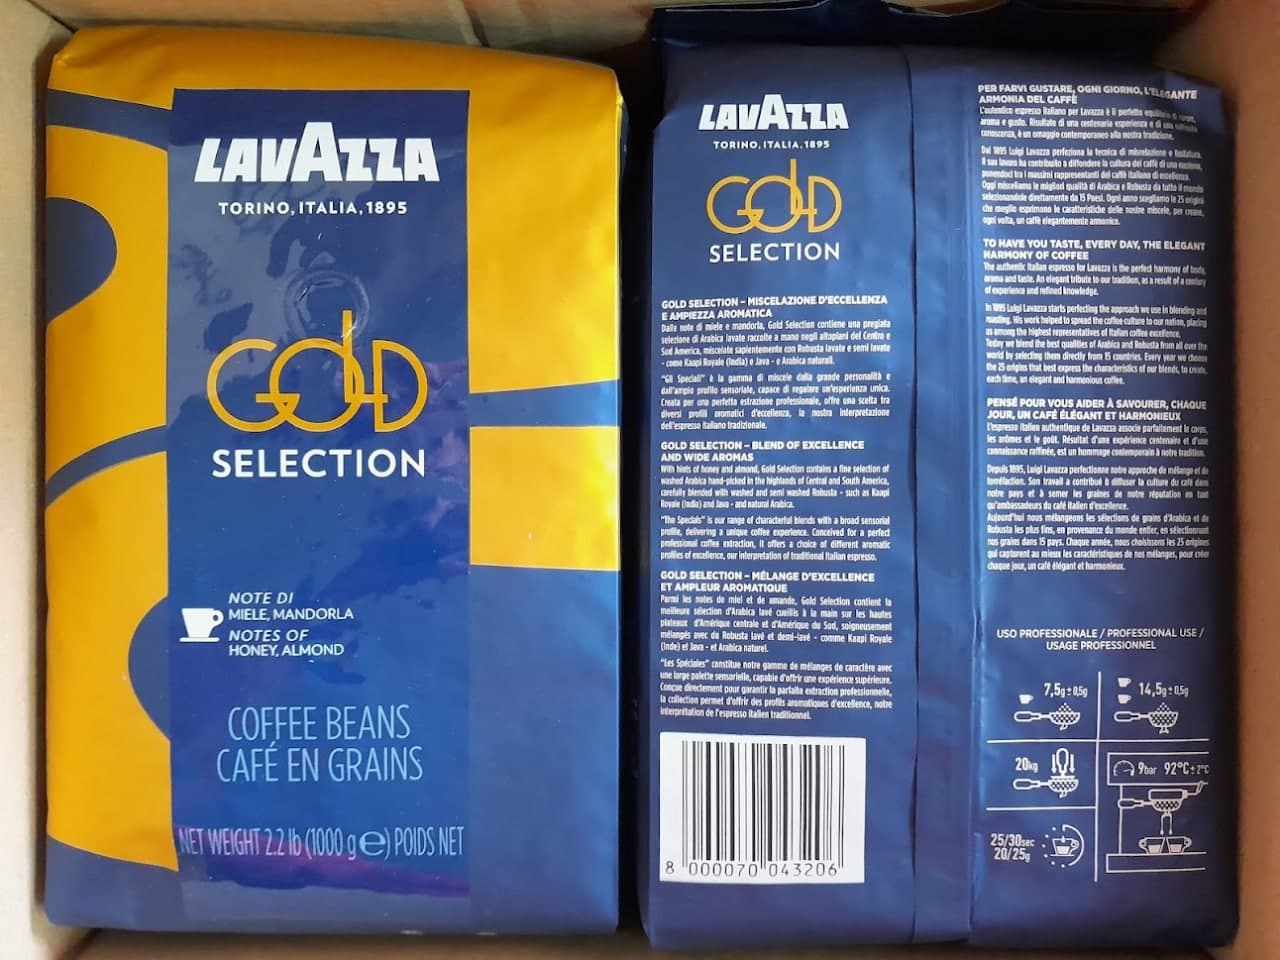 Pupiņu kafija "LAVAZZA" Specials Collection Gold Selection